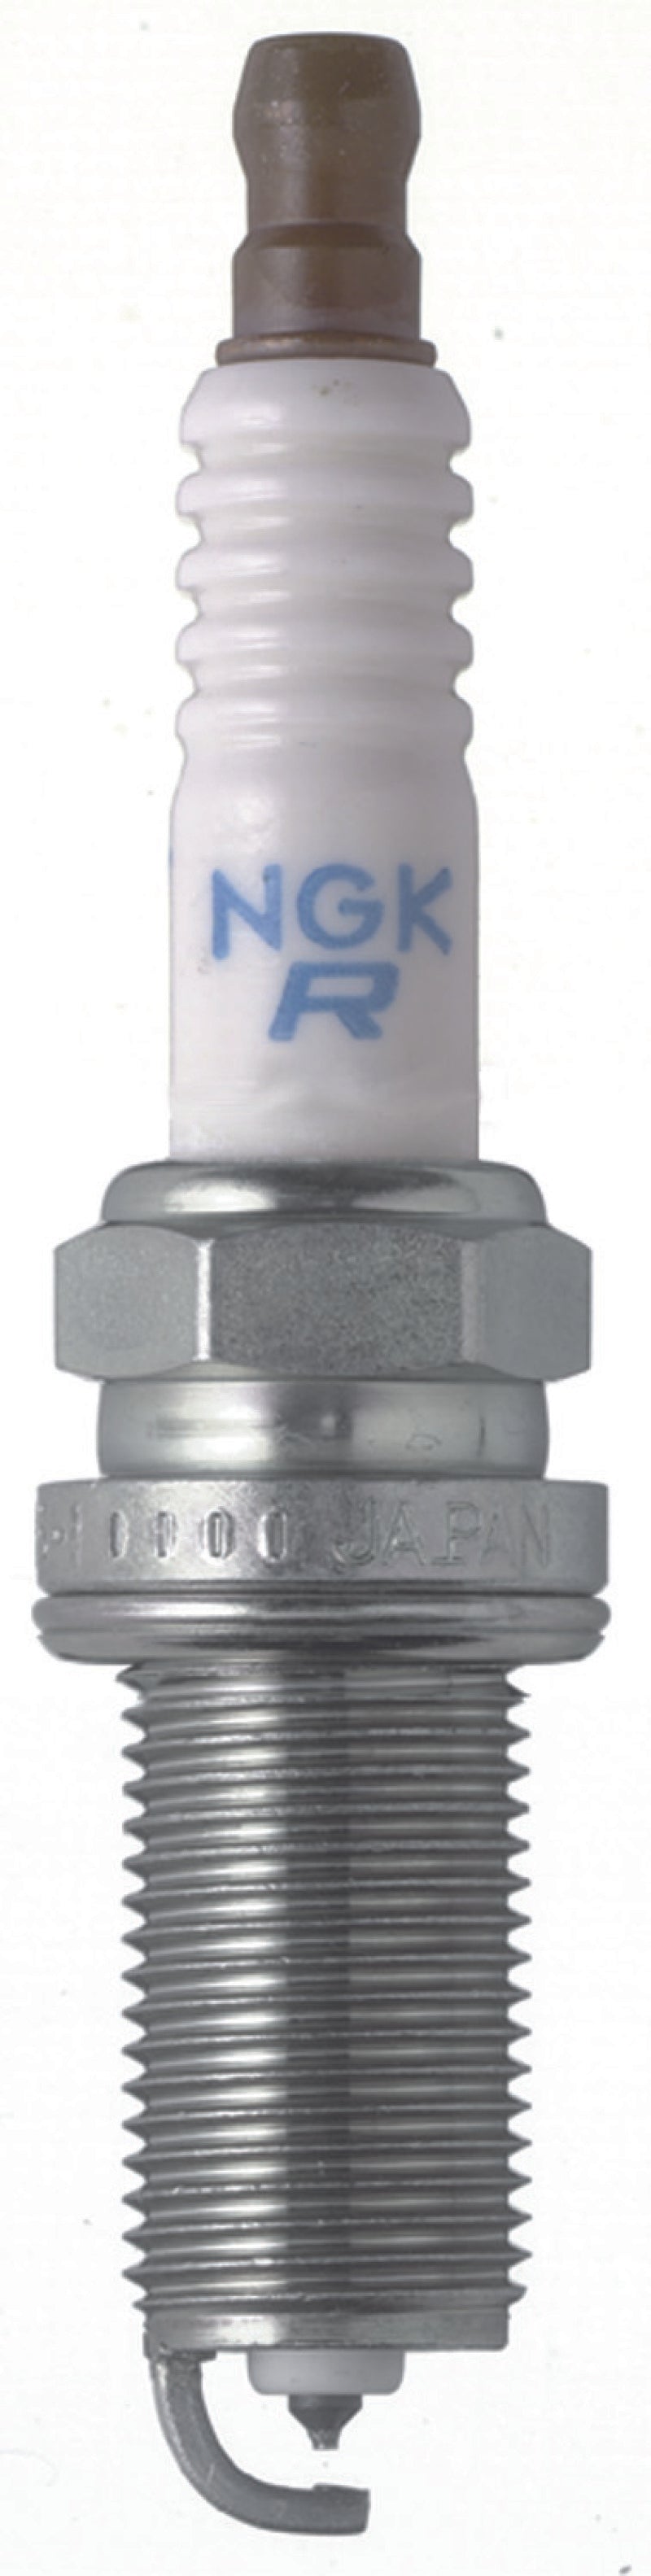 NGK Laser Platinum Spark Plug Box of 4 (PLFR5A-11).